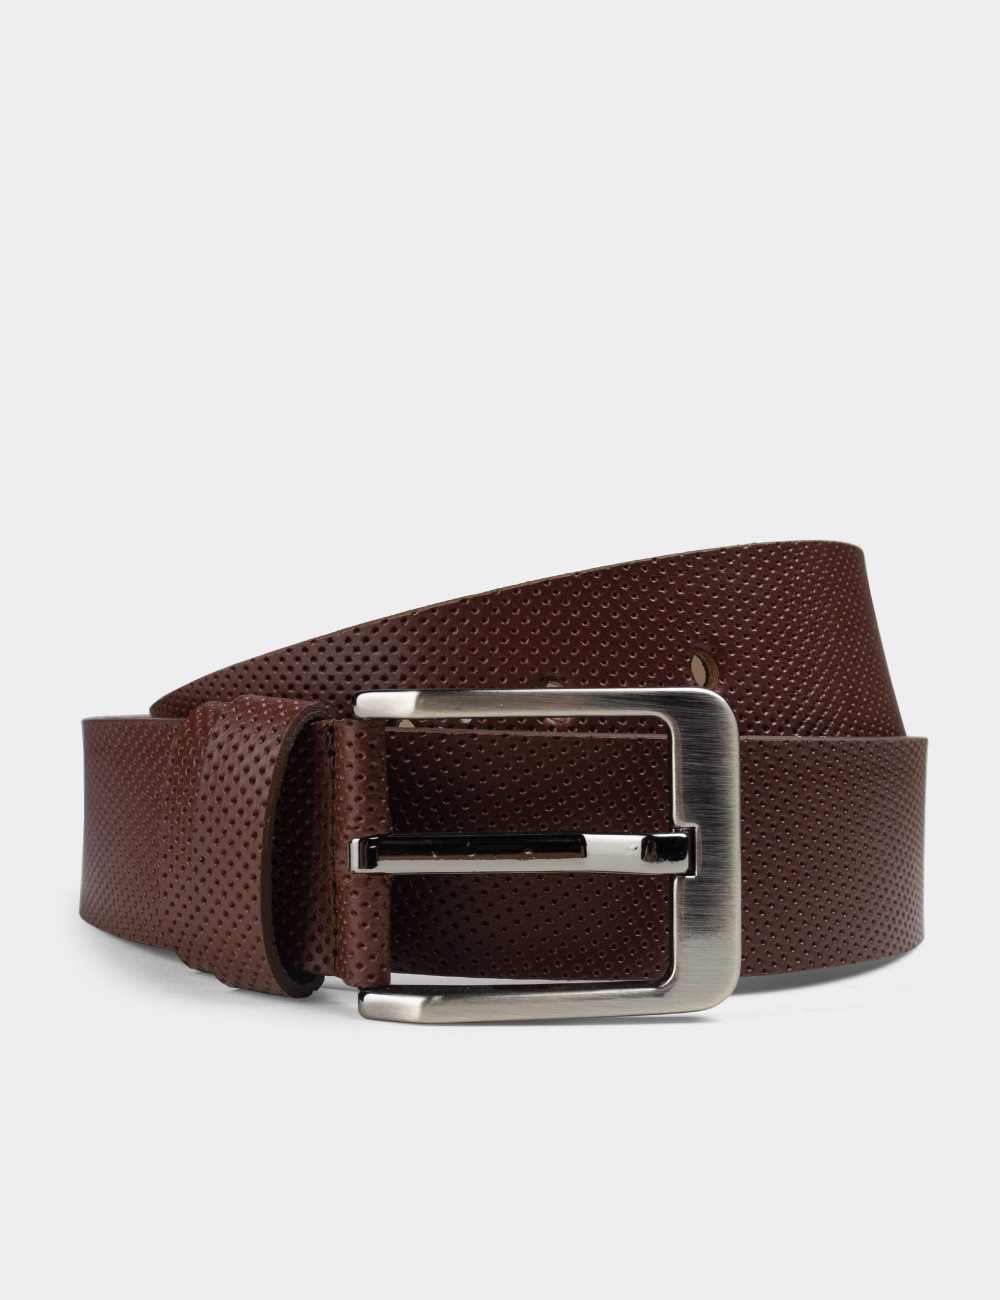  Leather Brown Men's Belt - K0108MKHVW01